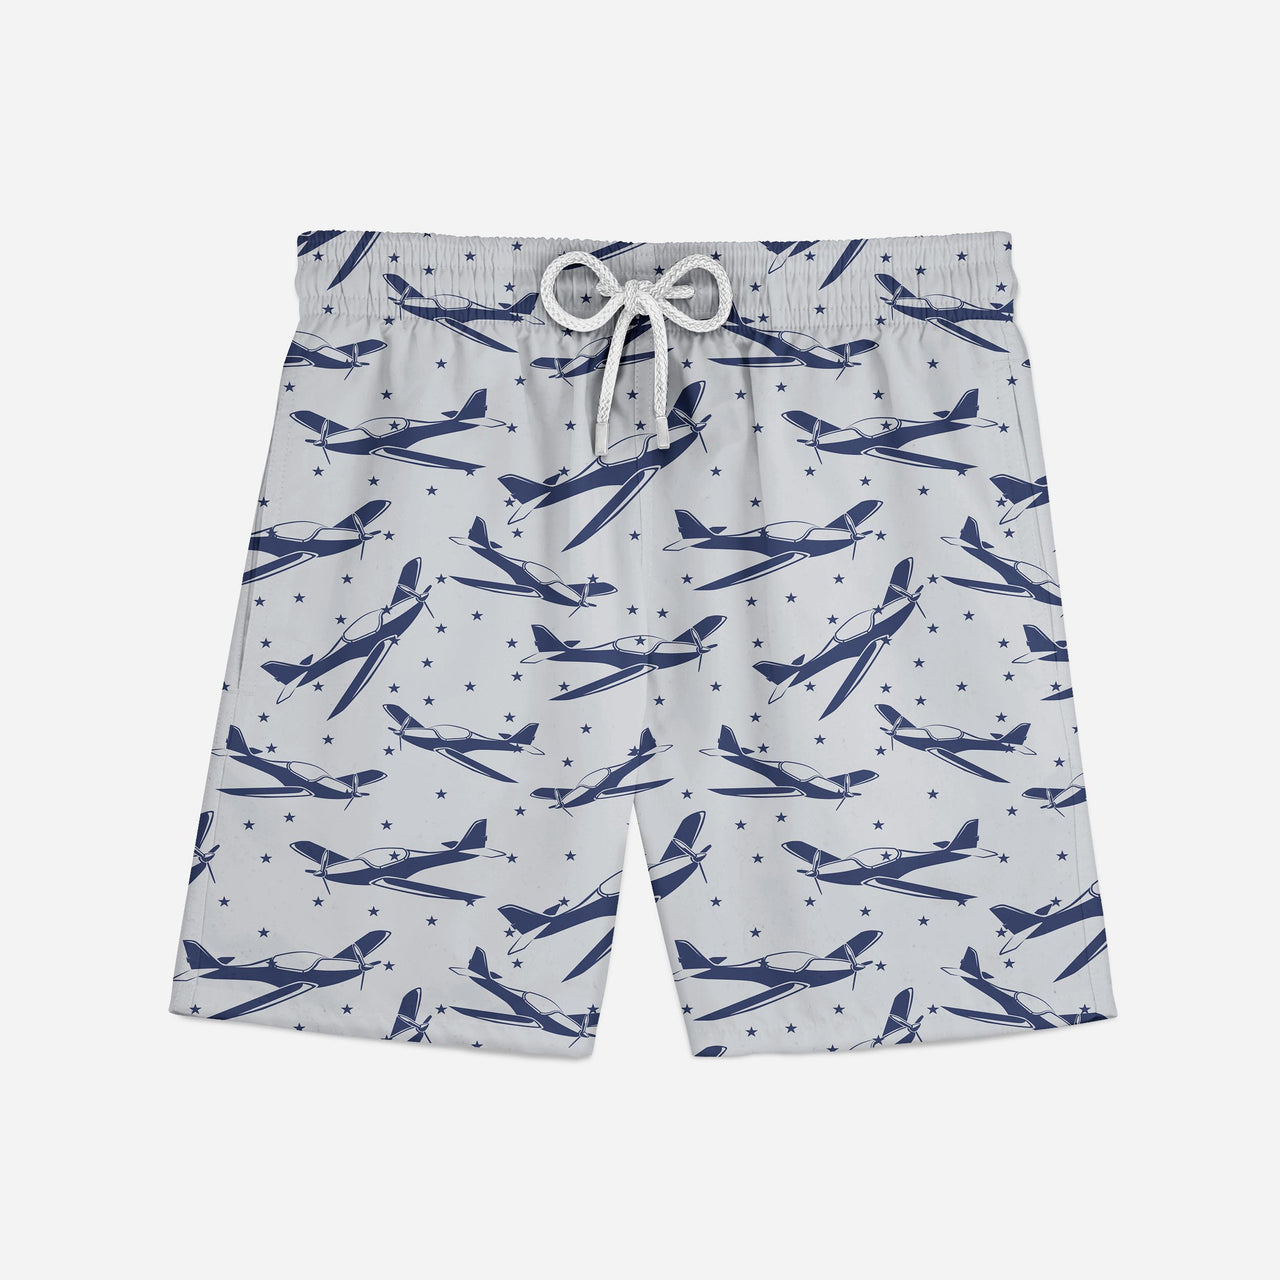 Propellers & Stars Designed Swim Trunks & Shorts